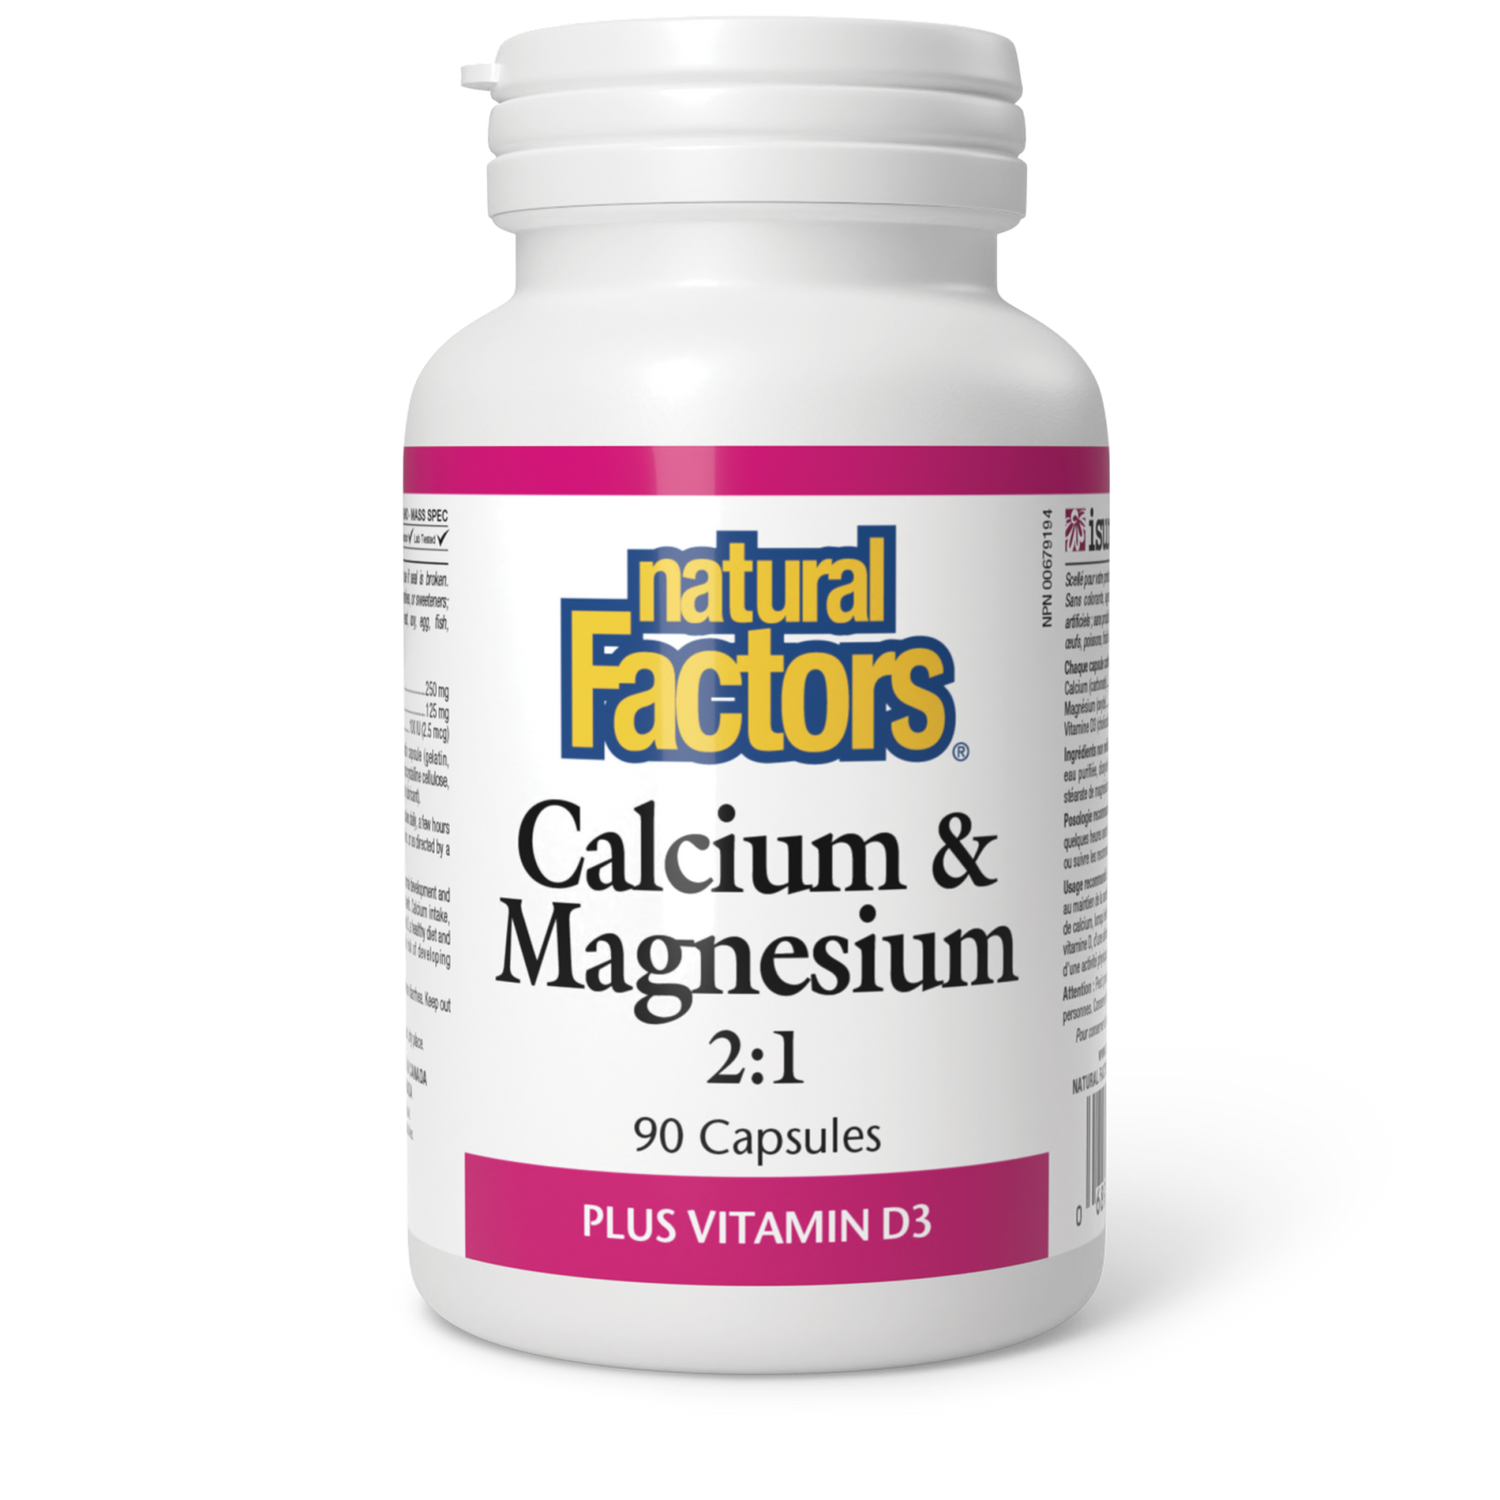 Calcium & Magnesium 2:1 Plus Vitamin D3, Natural Factors|v|image|1625